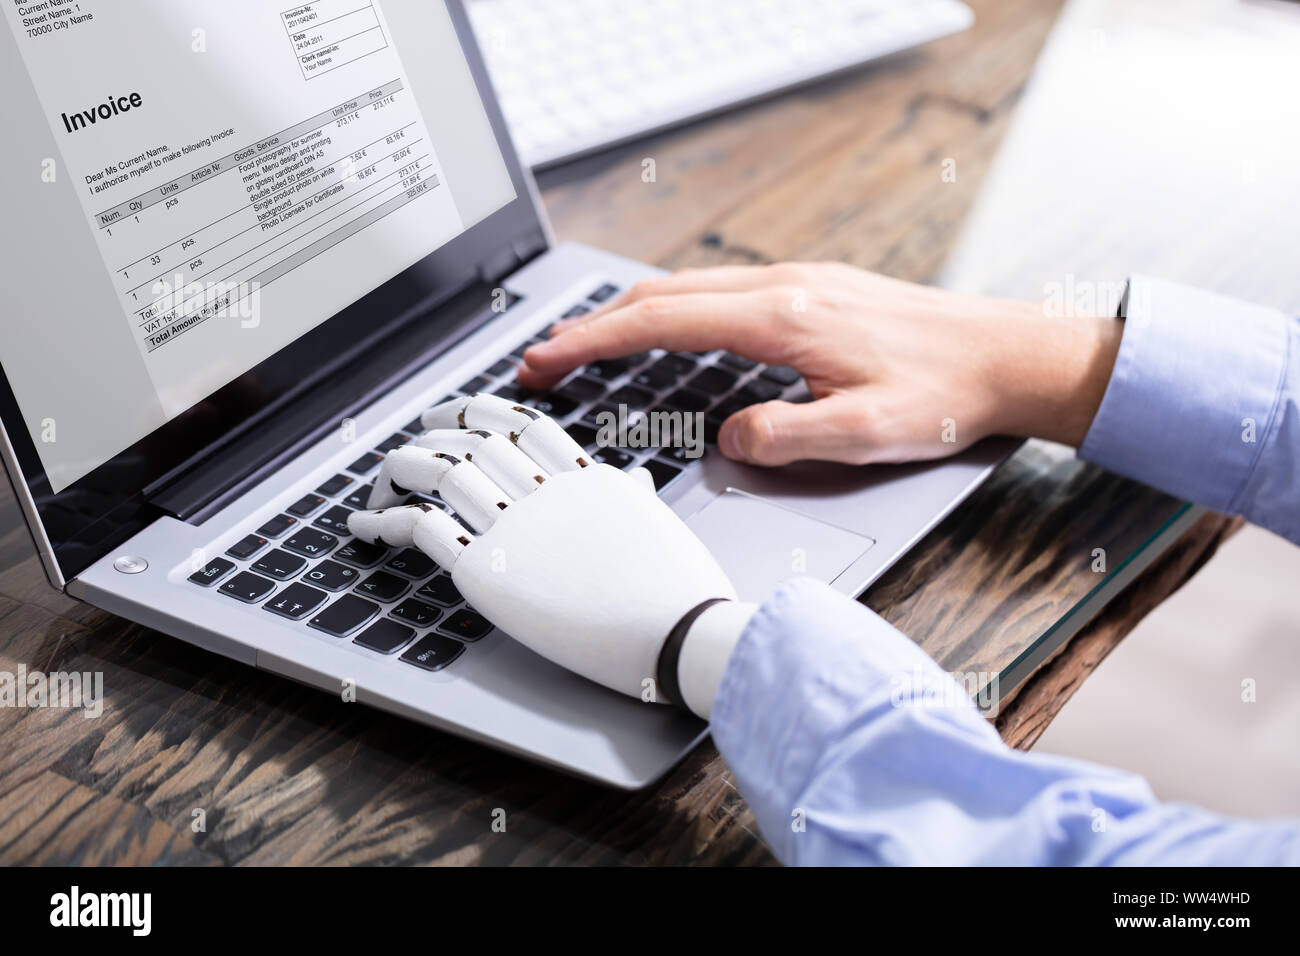 Homme avec prothèse de main travaillant sur ordinateur portable. Membre artificiel Banque D'Images